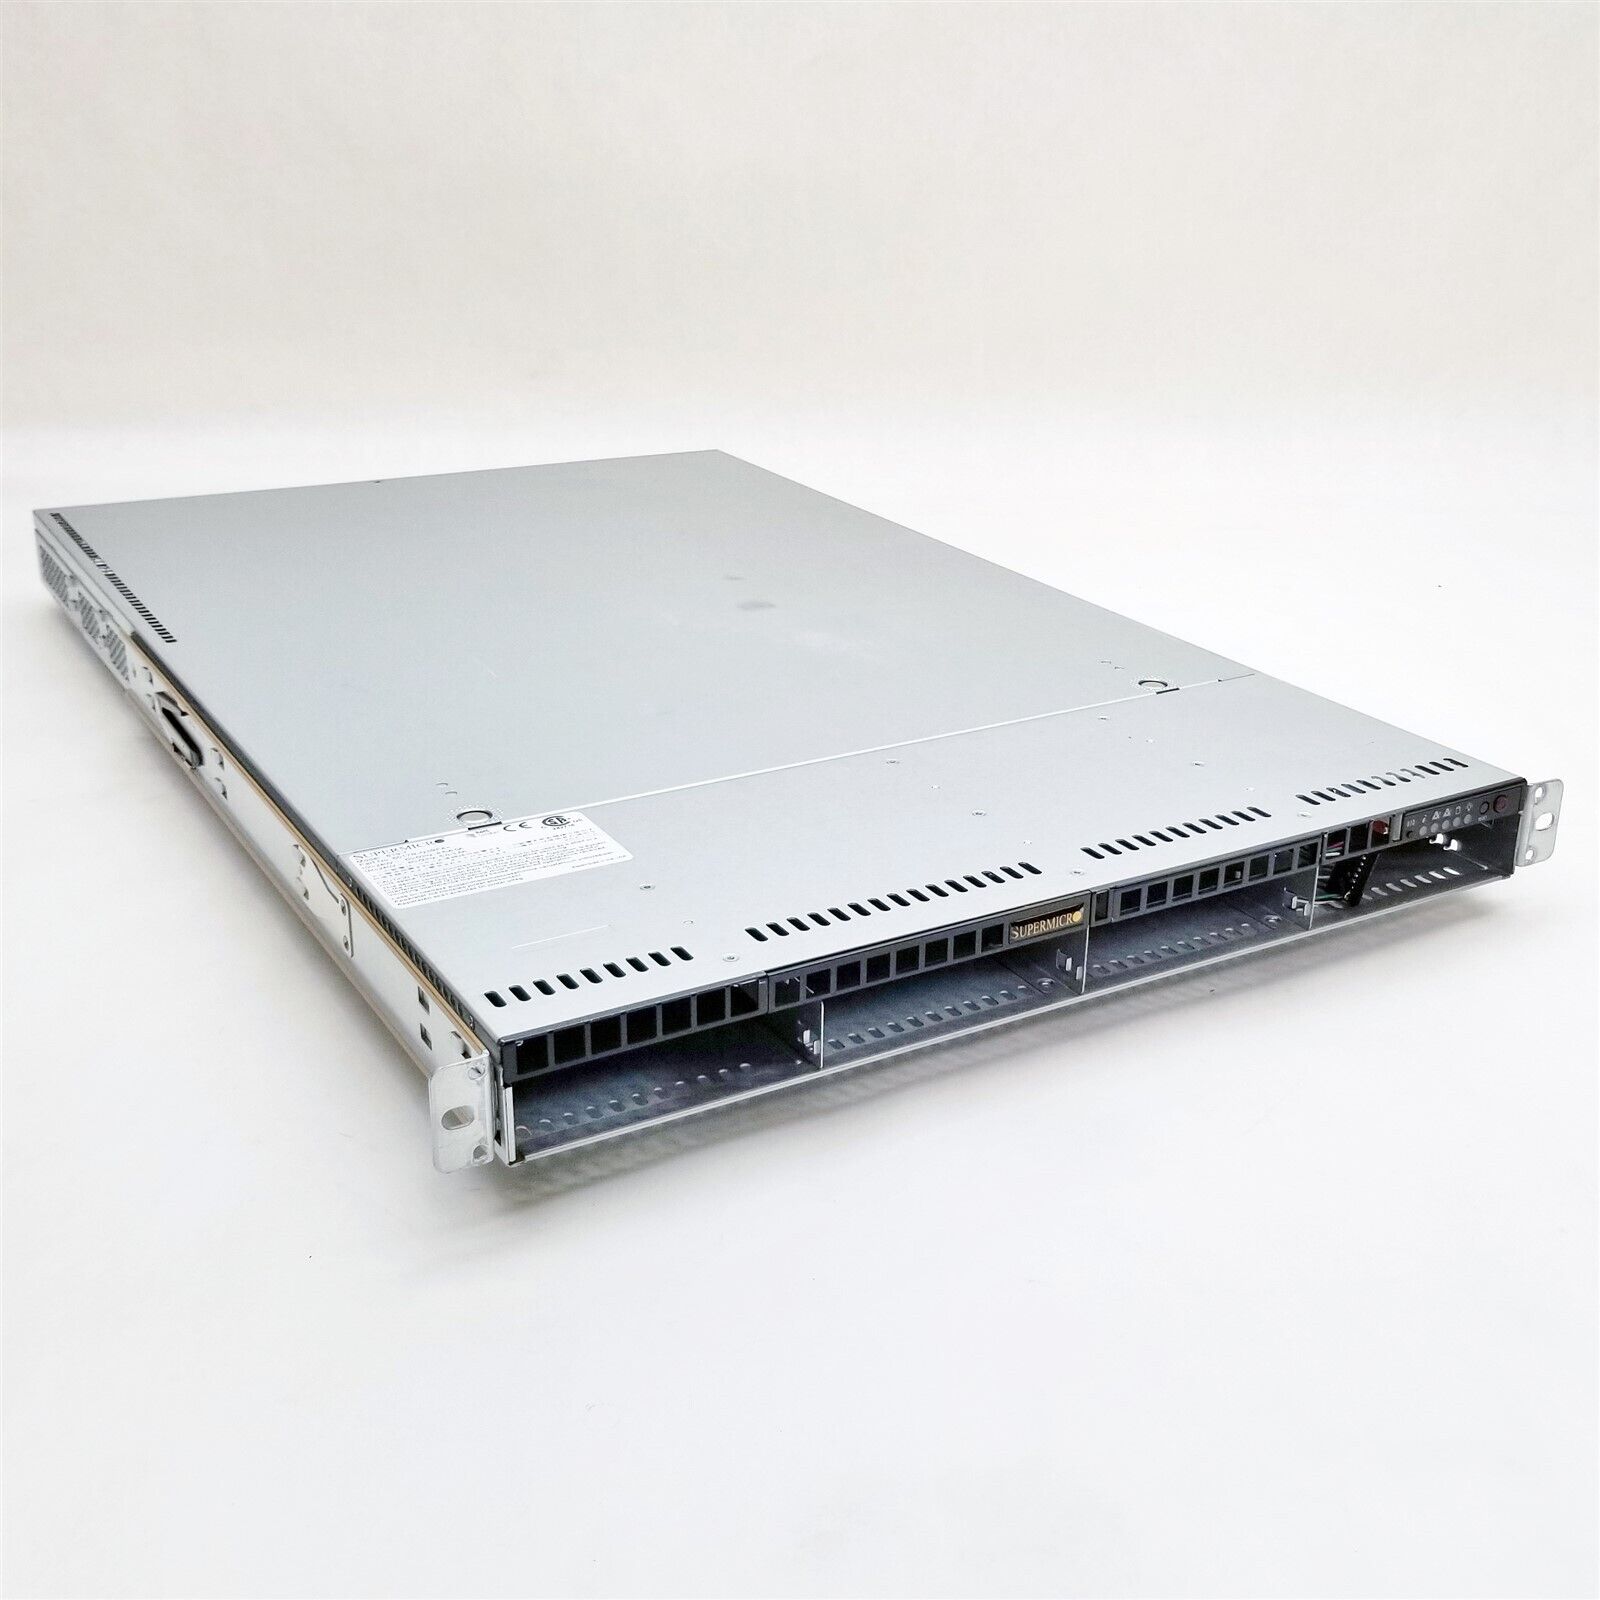 Supermicro 818-7 4-LFF X9DRW-3LN4F+ 2*E5-2603v2 1.8GHz 16GB RAM No HDD 1U Server